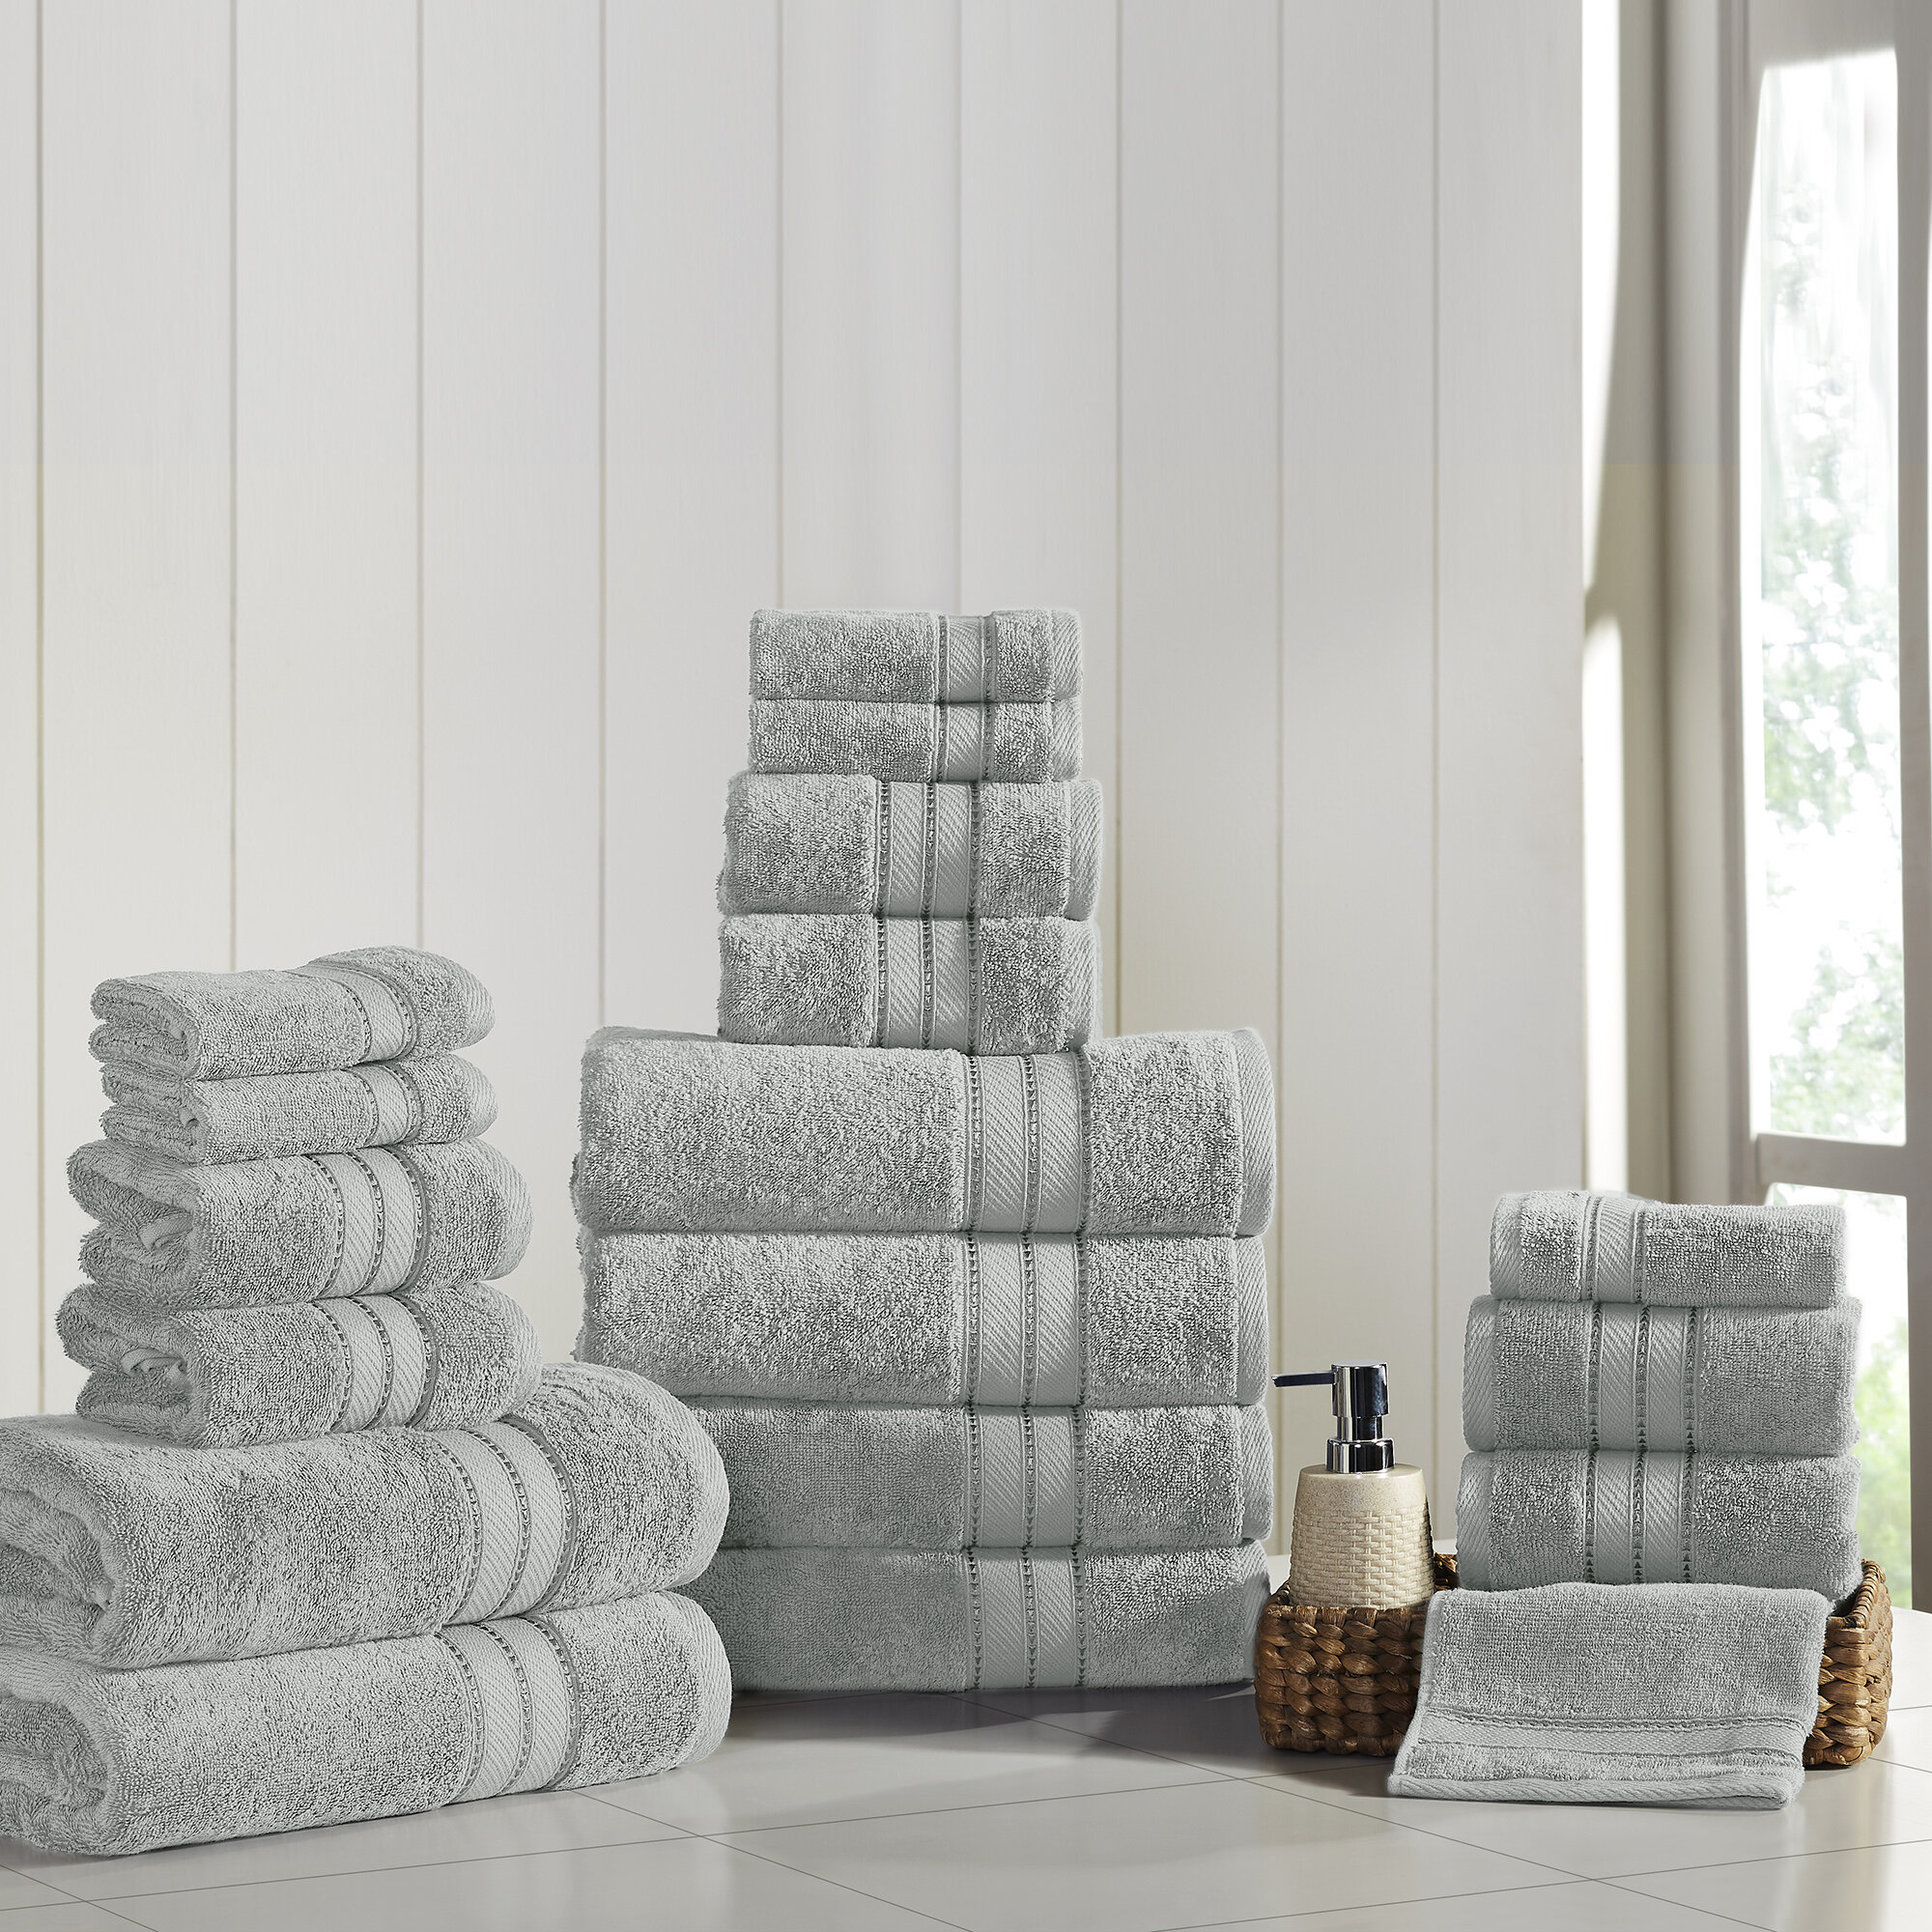 https://assets.wfcdn.com/im/10566187/compr-r85/9308/93087578/spunloft-100-cotton-bath-towels.jpg